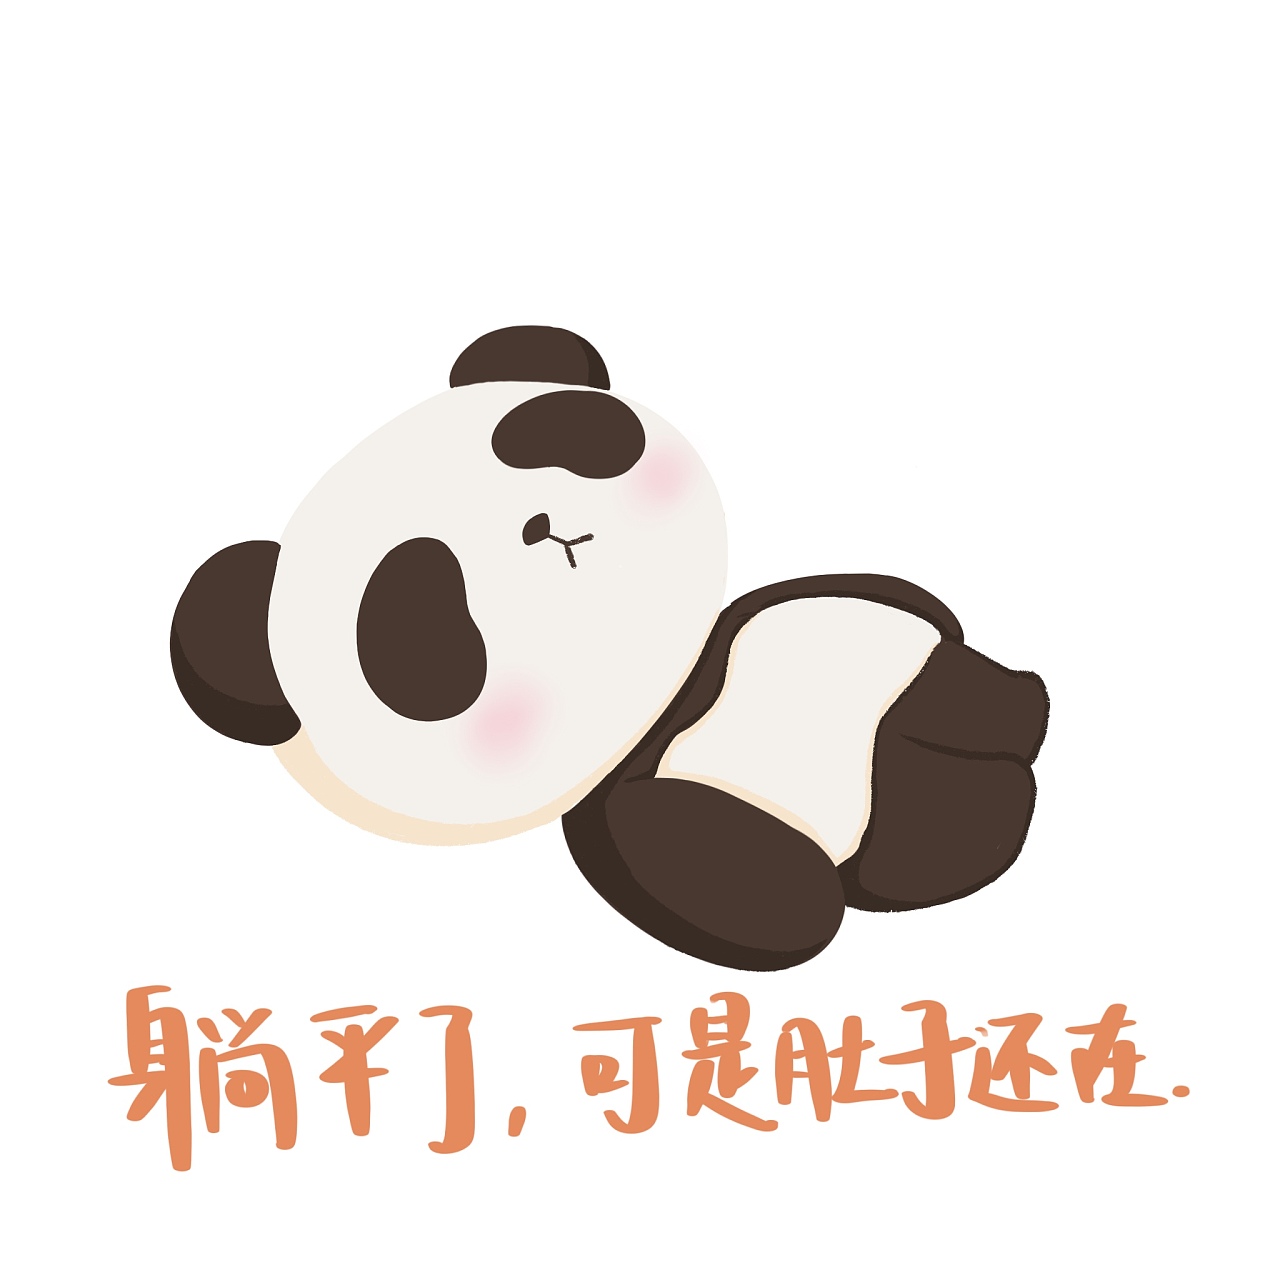 熊猫头躺床上听网易云：到点了_表情包图片下载_DIY斗图